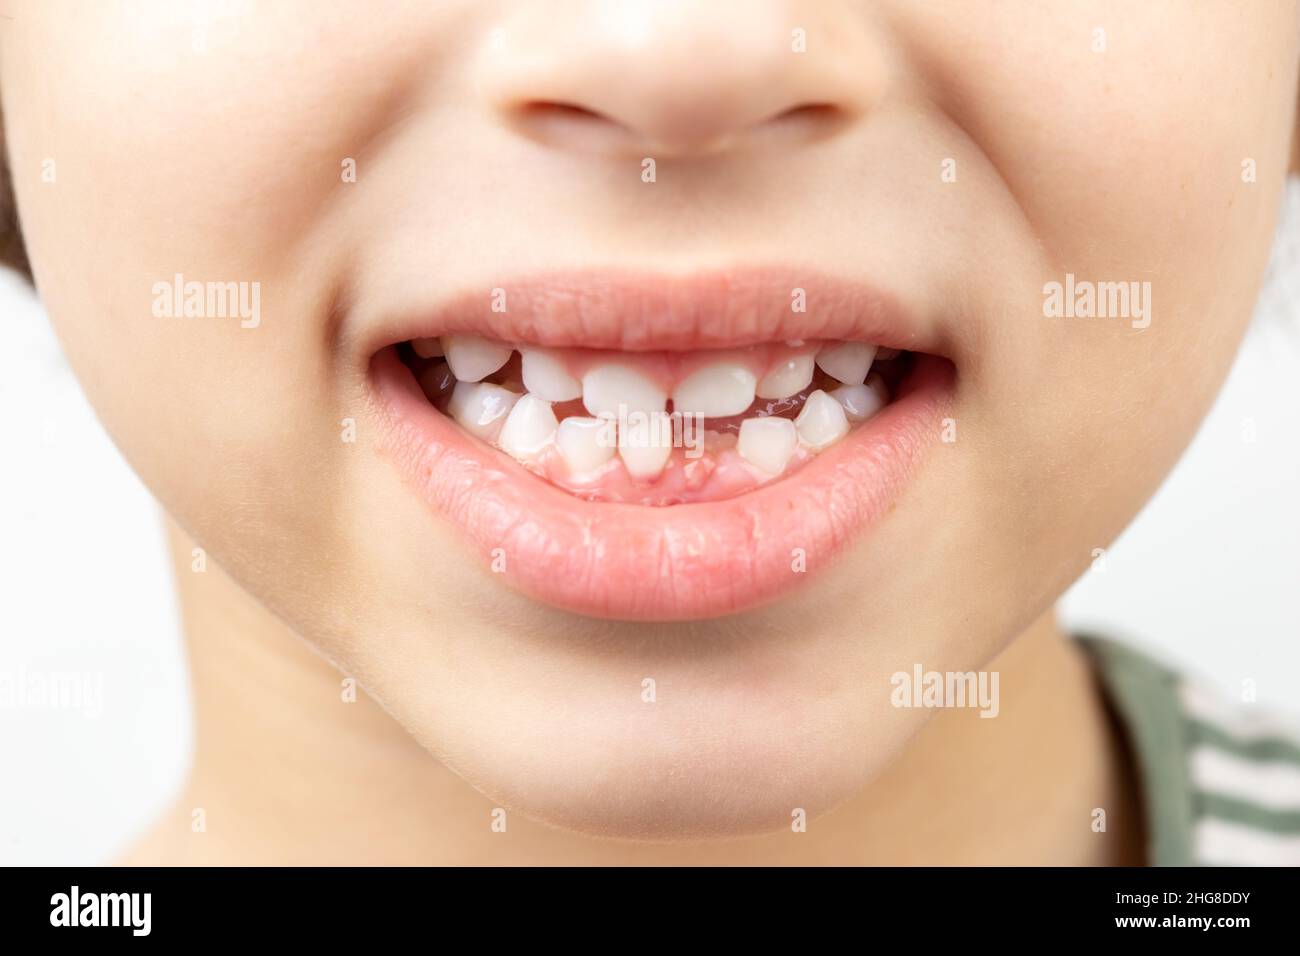 Primo piano della bocca del bambino senza un dente anteriore inferiore. Concetto di salute dentale Foto Stock